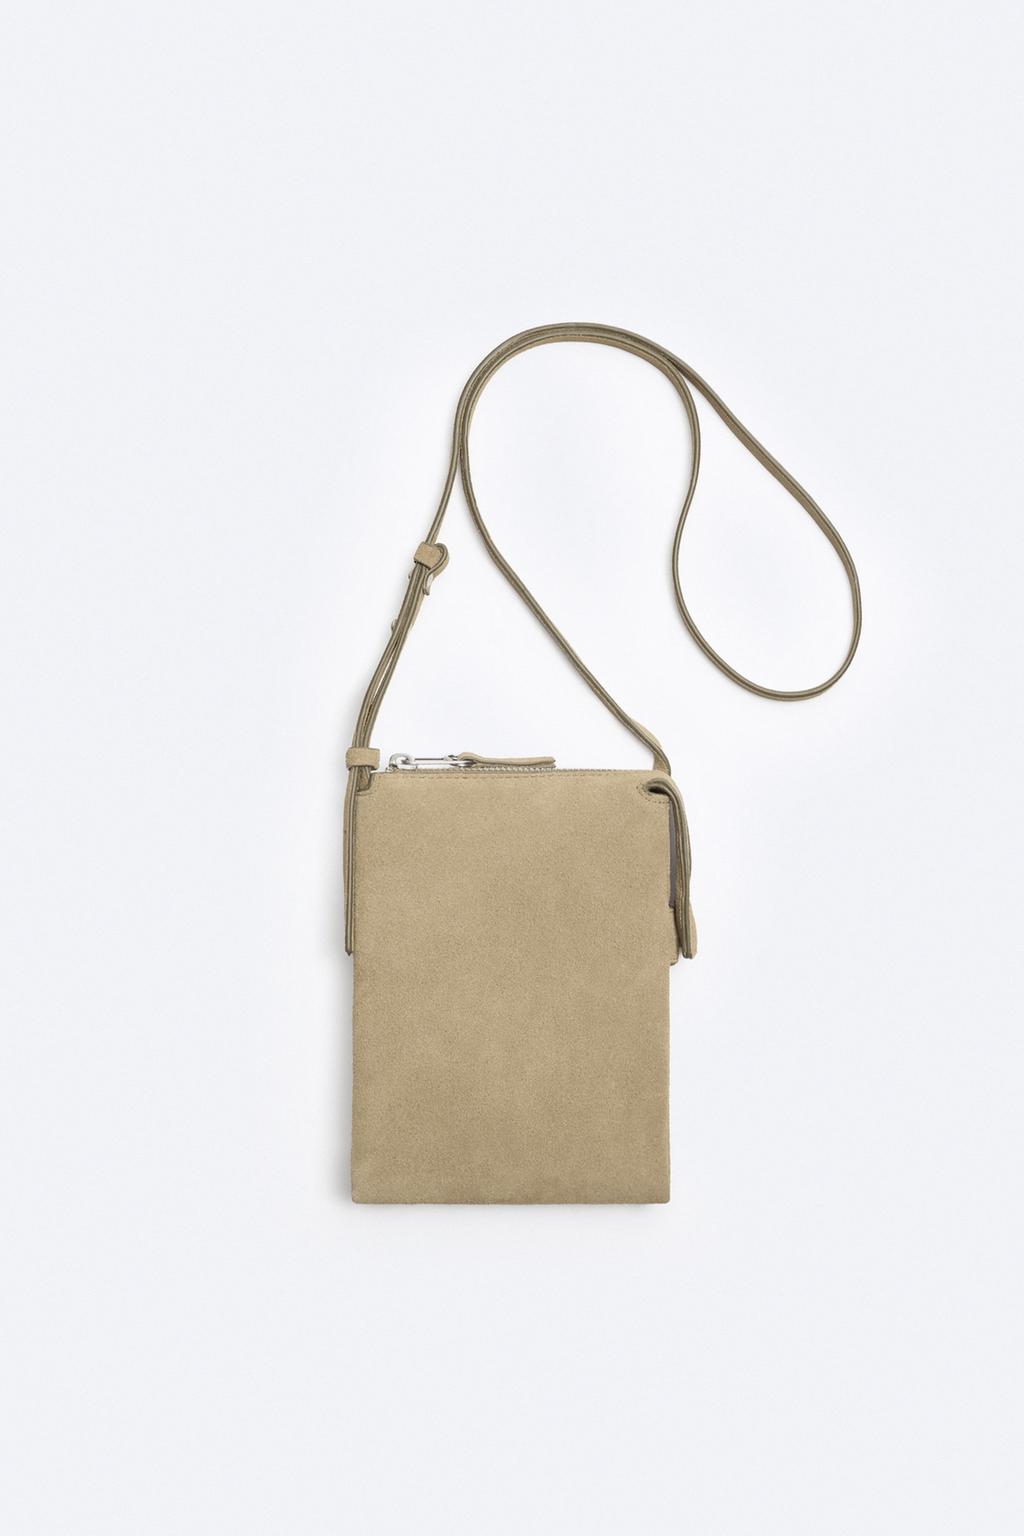 Кожаная мини-сумка кроссбоди ZARA, песочно-коричневый